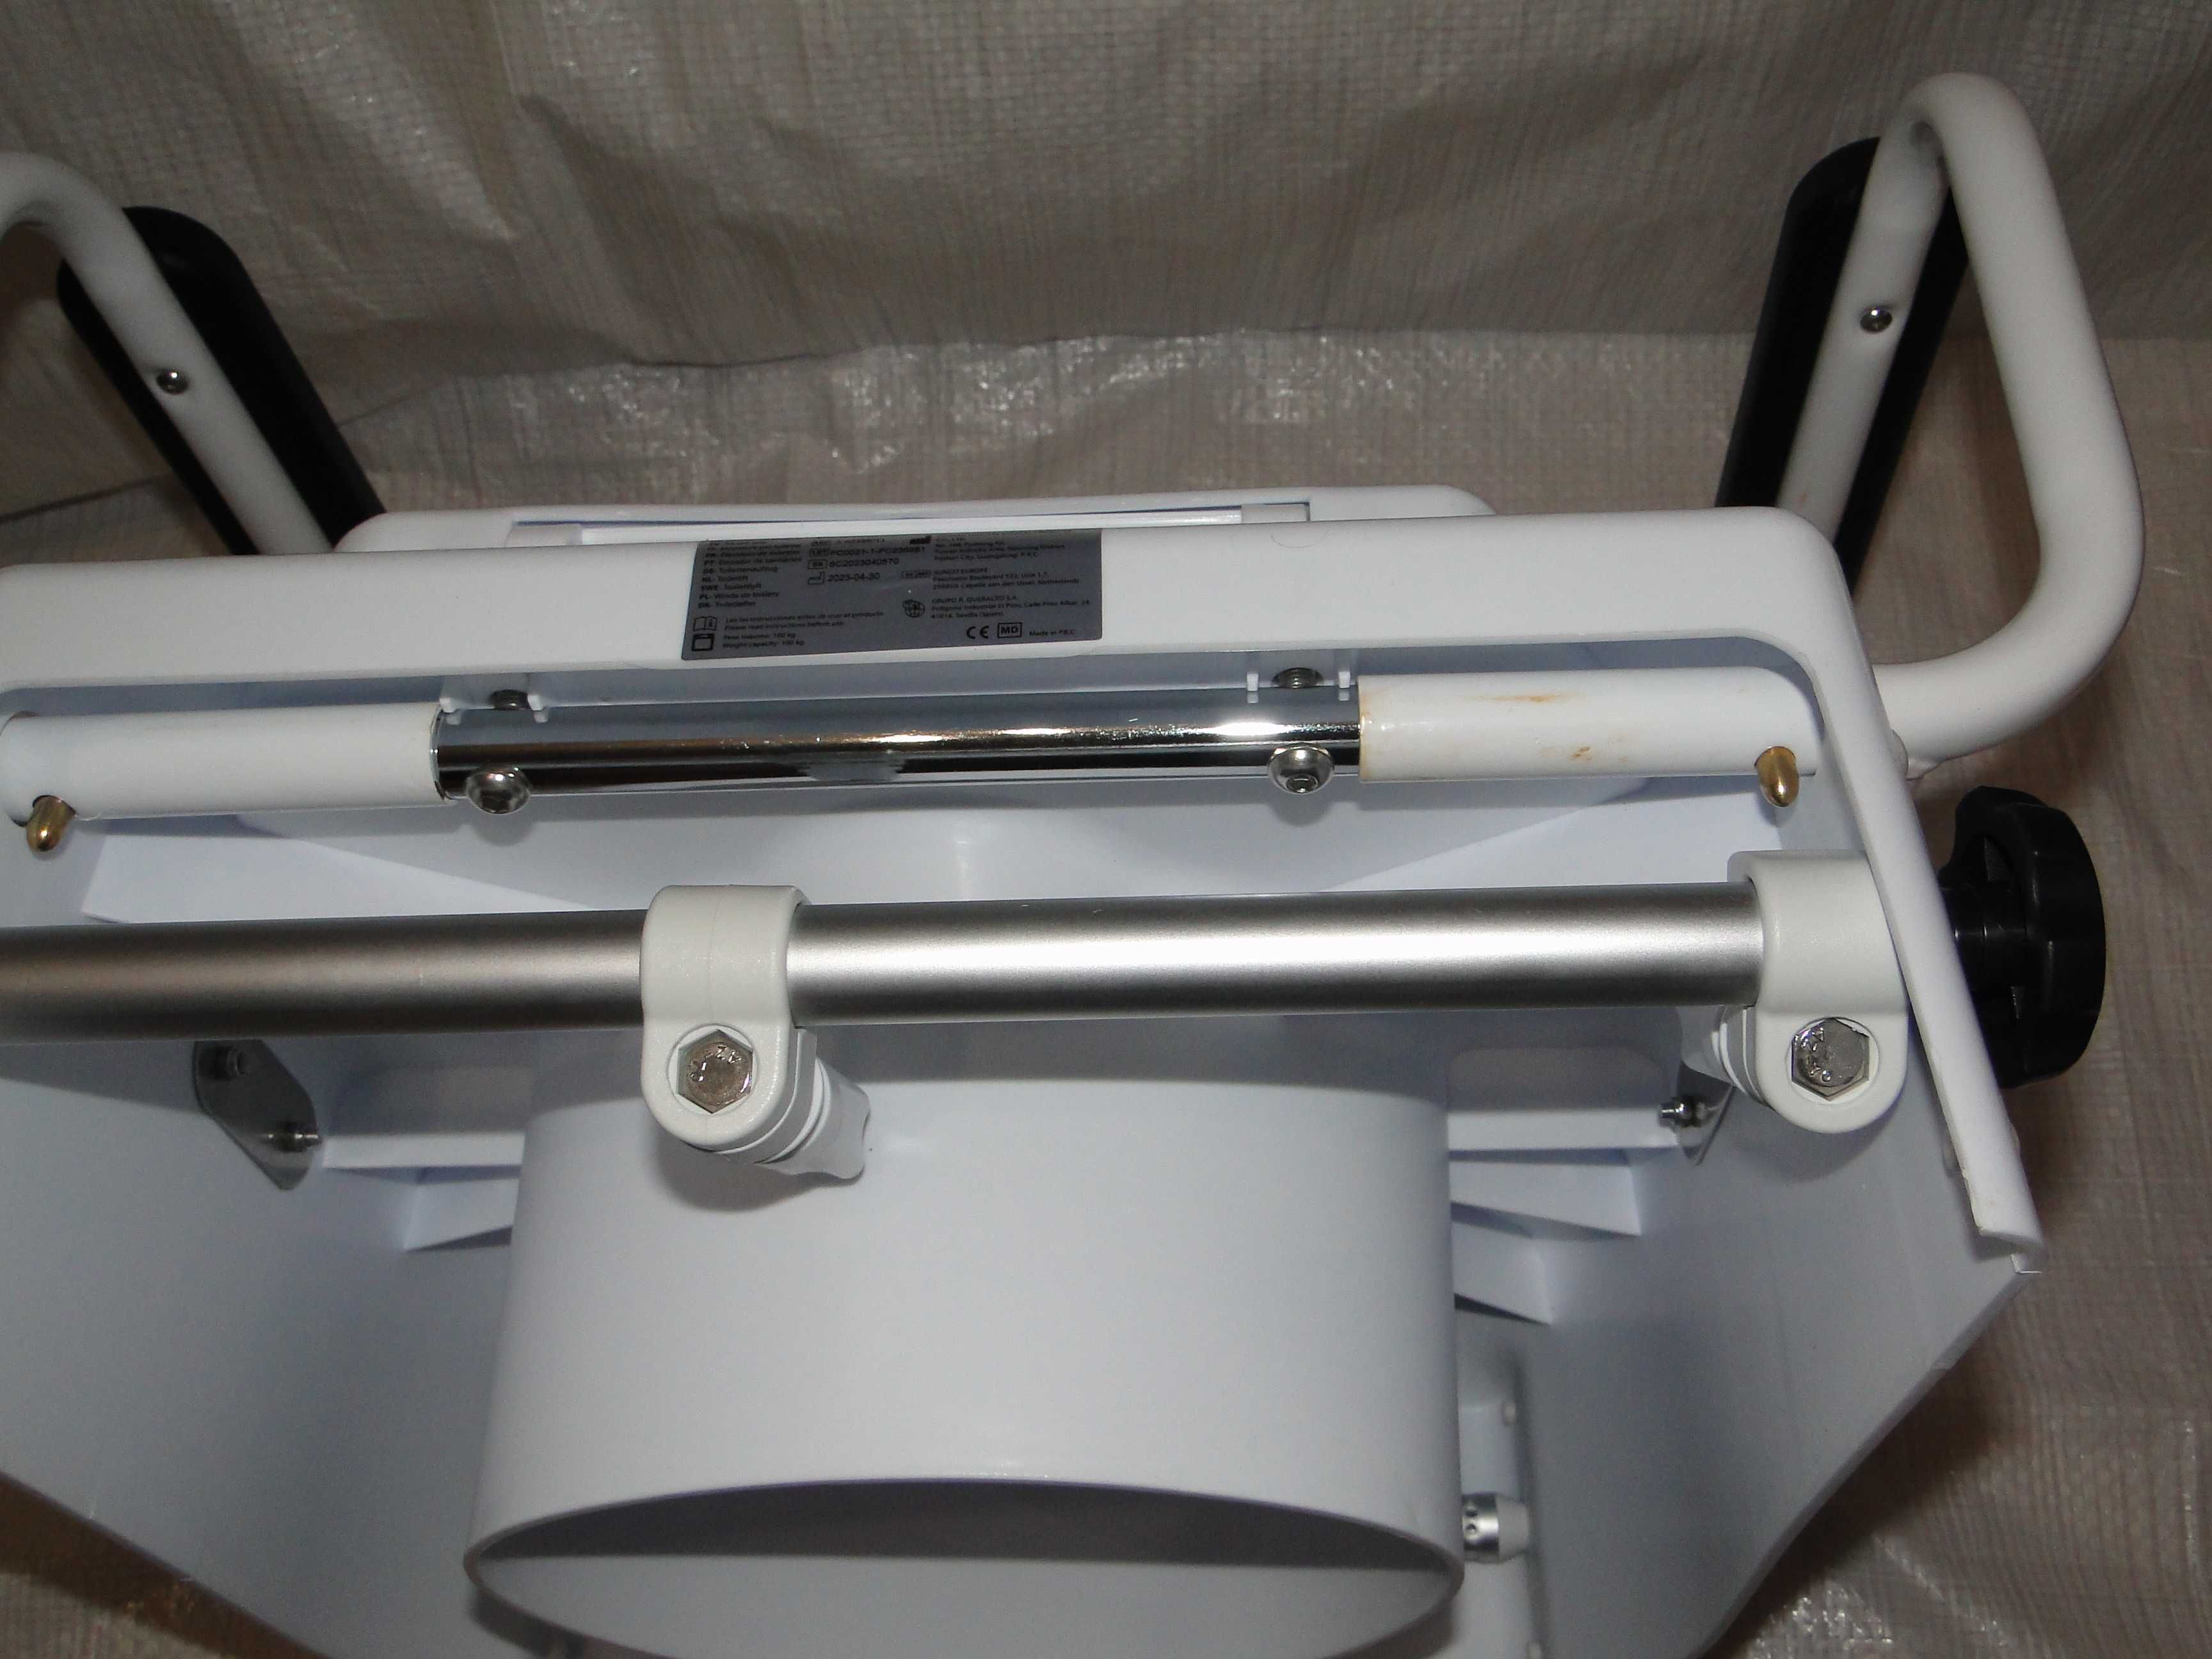 Nakładka toaletowa 19 cm dla osób starszych Mobiclinic Tajo SC7060H